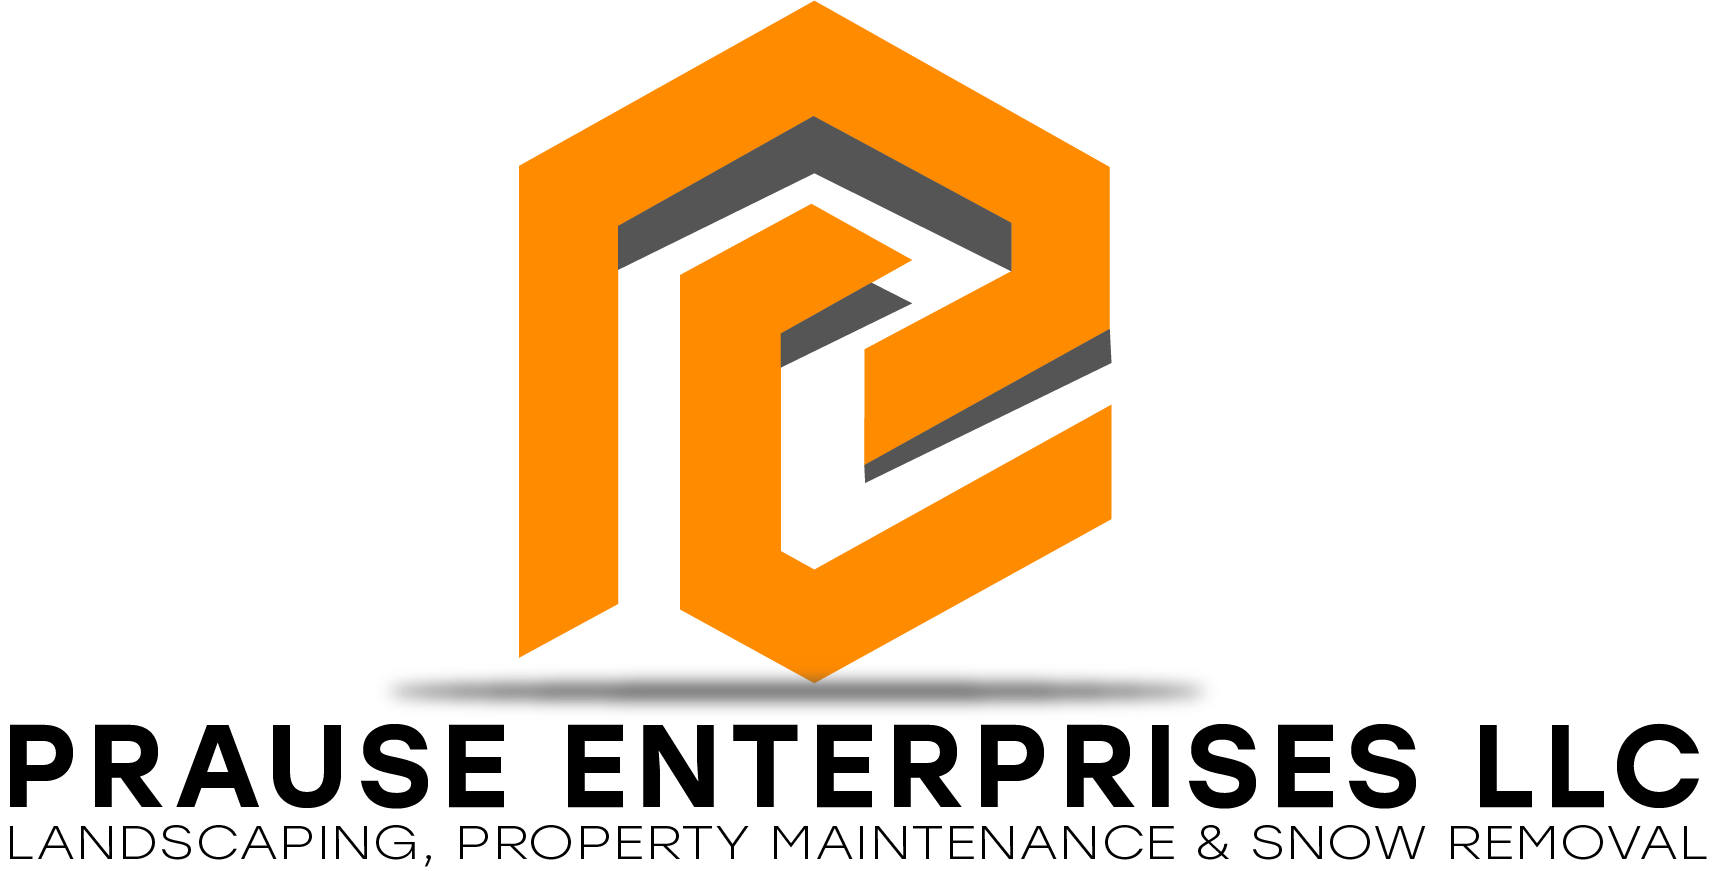 Landscaper in Goshen, CT | Prause Enterprises LLC